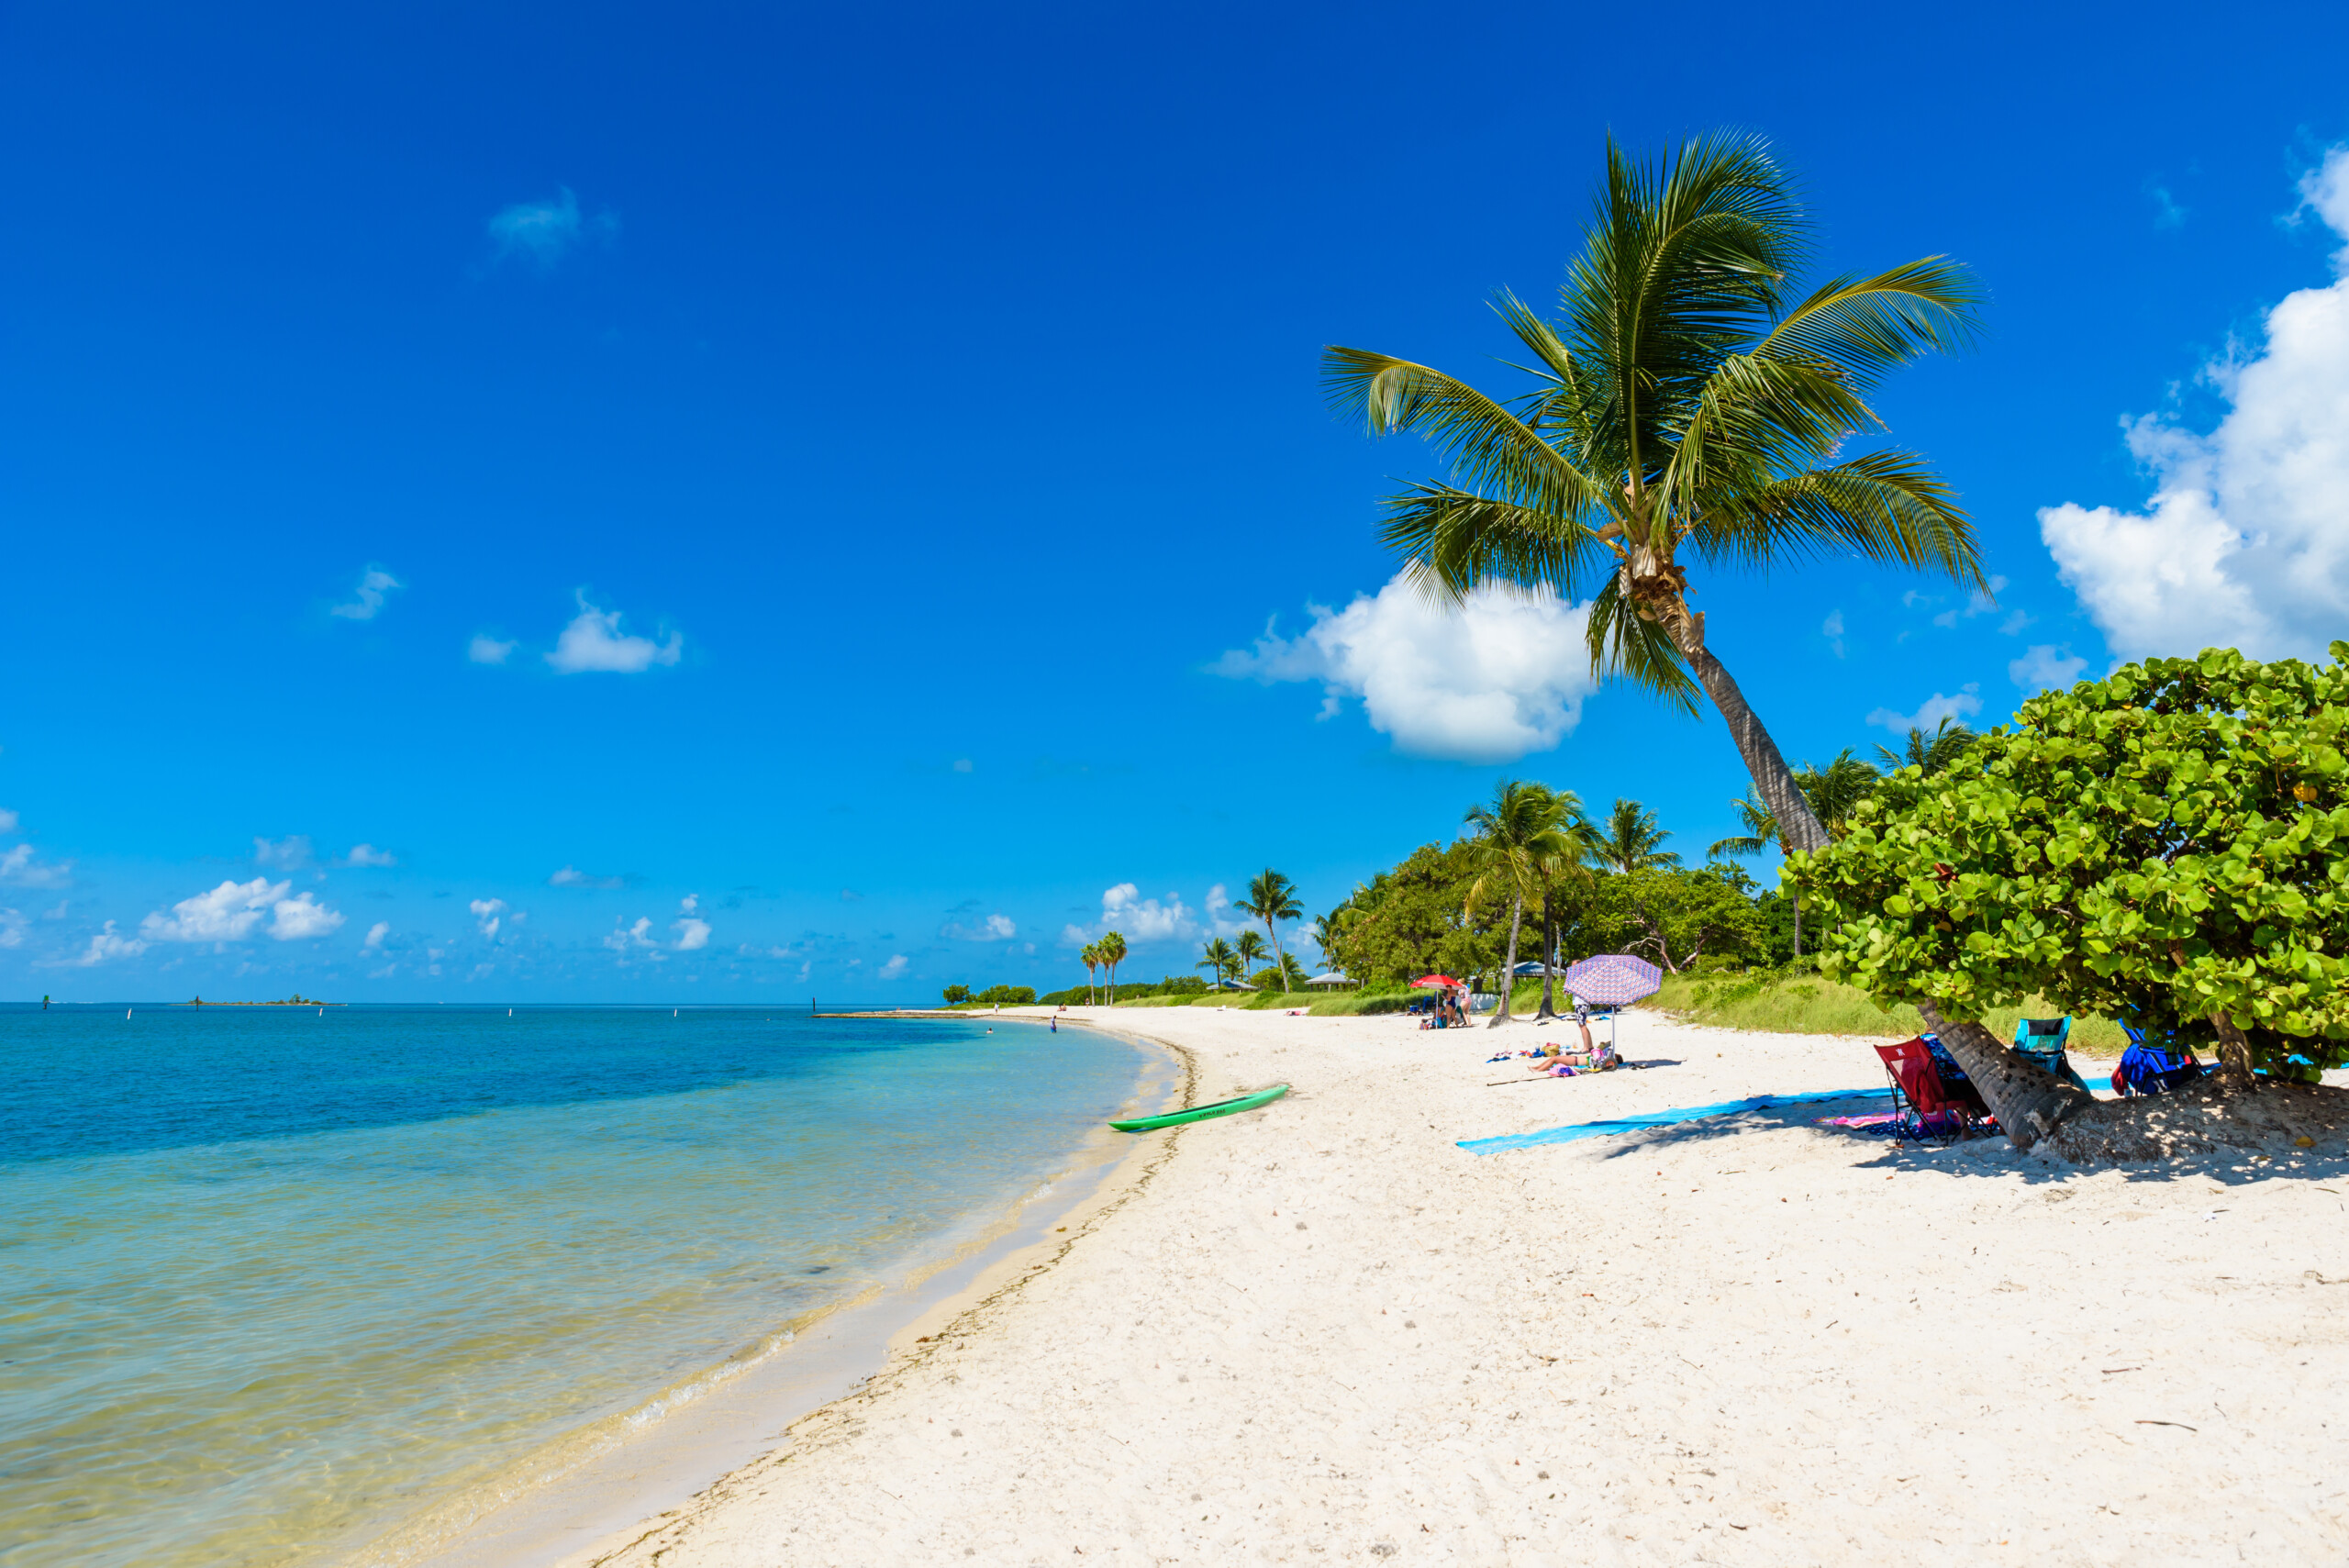 Plaża Sombrero z palmami na Florida Keys, Marathon, Floryda, USA. Tropikalne i rajskie miejsce na wakacje.